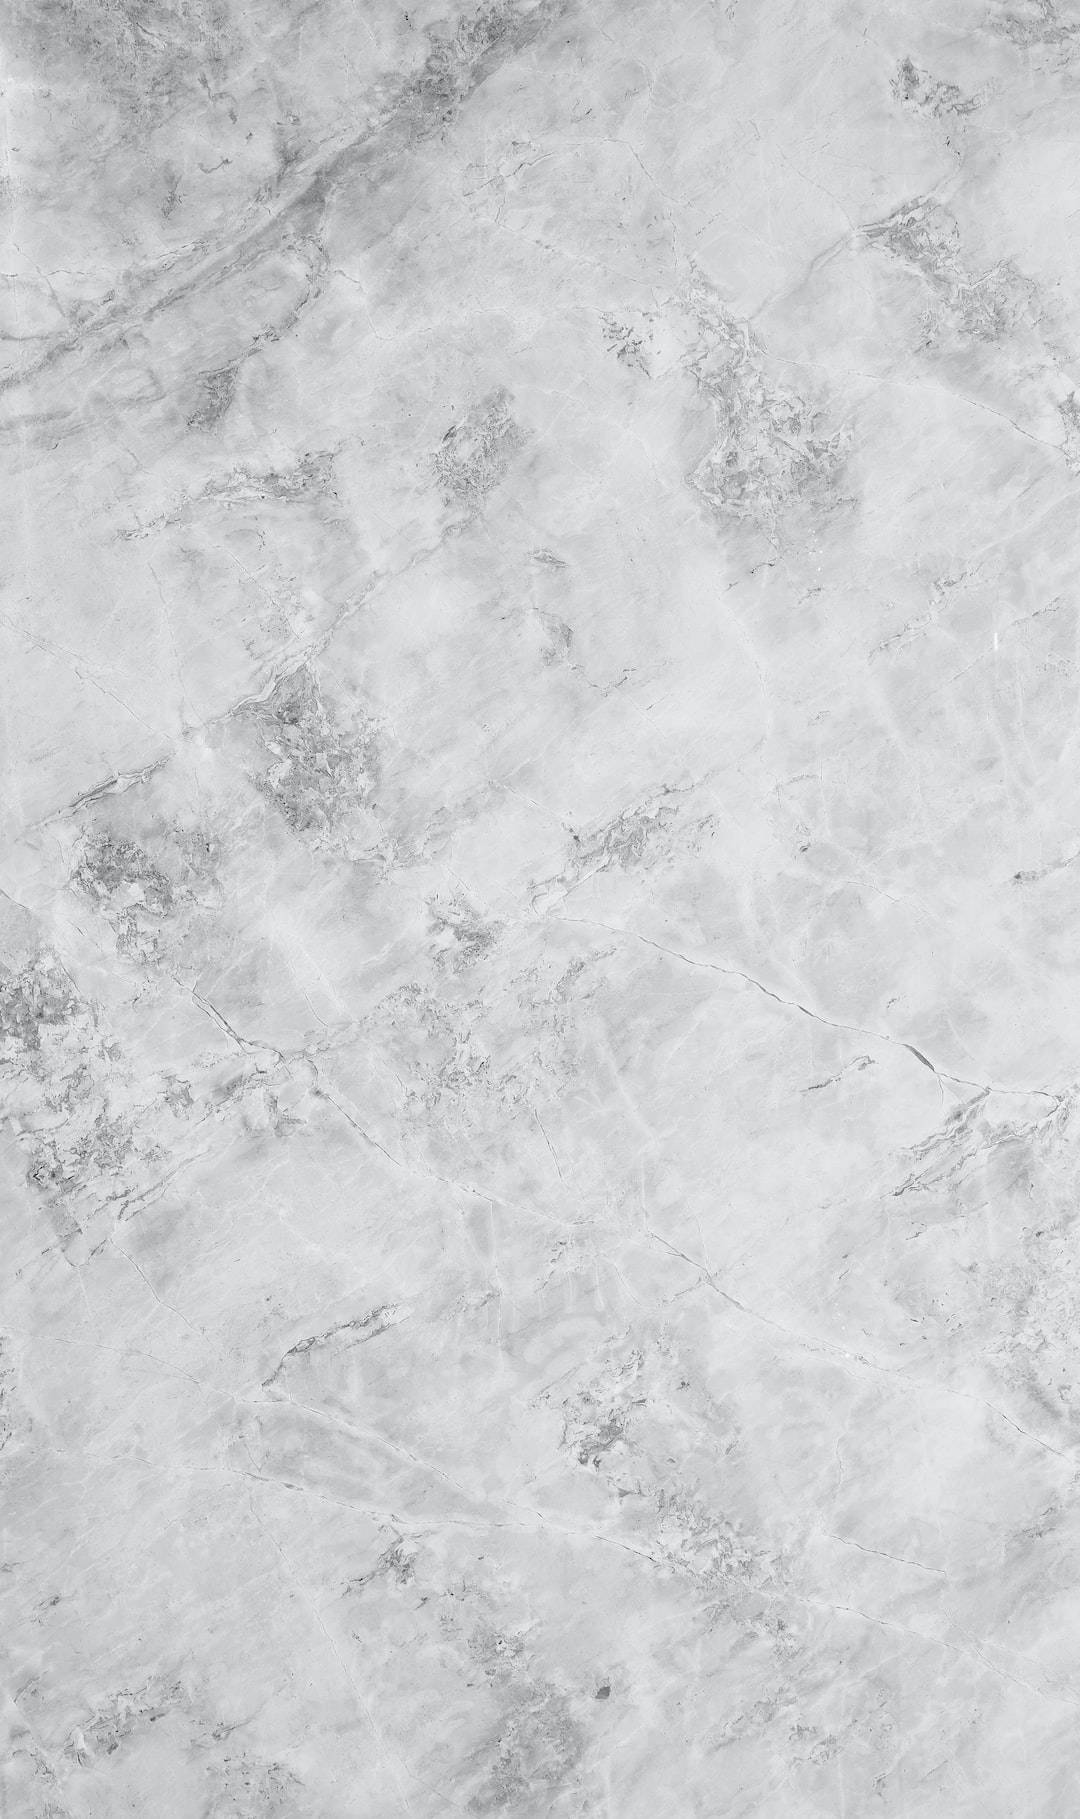 Himalaya Black White Marble Iphone Background